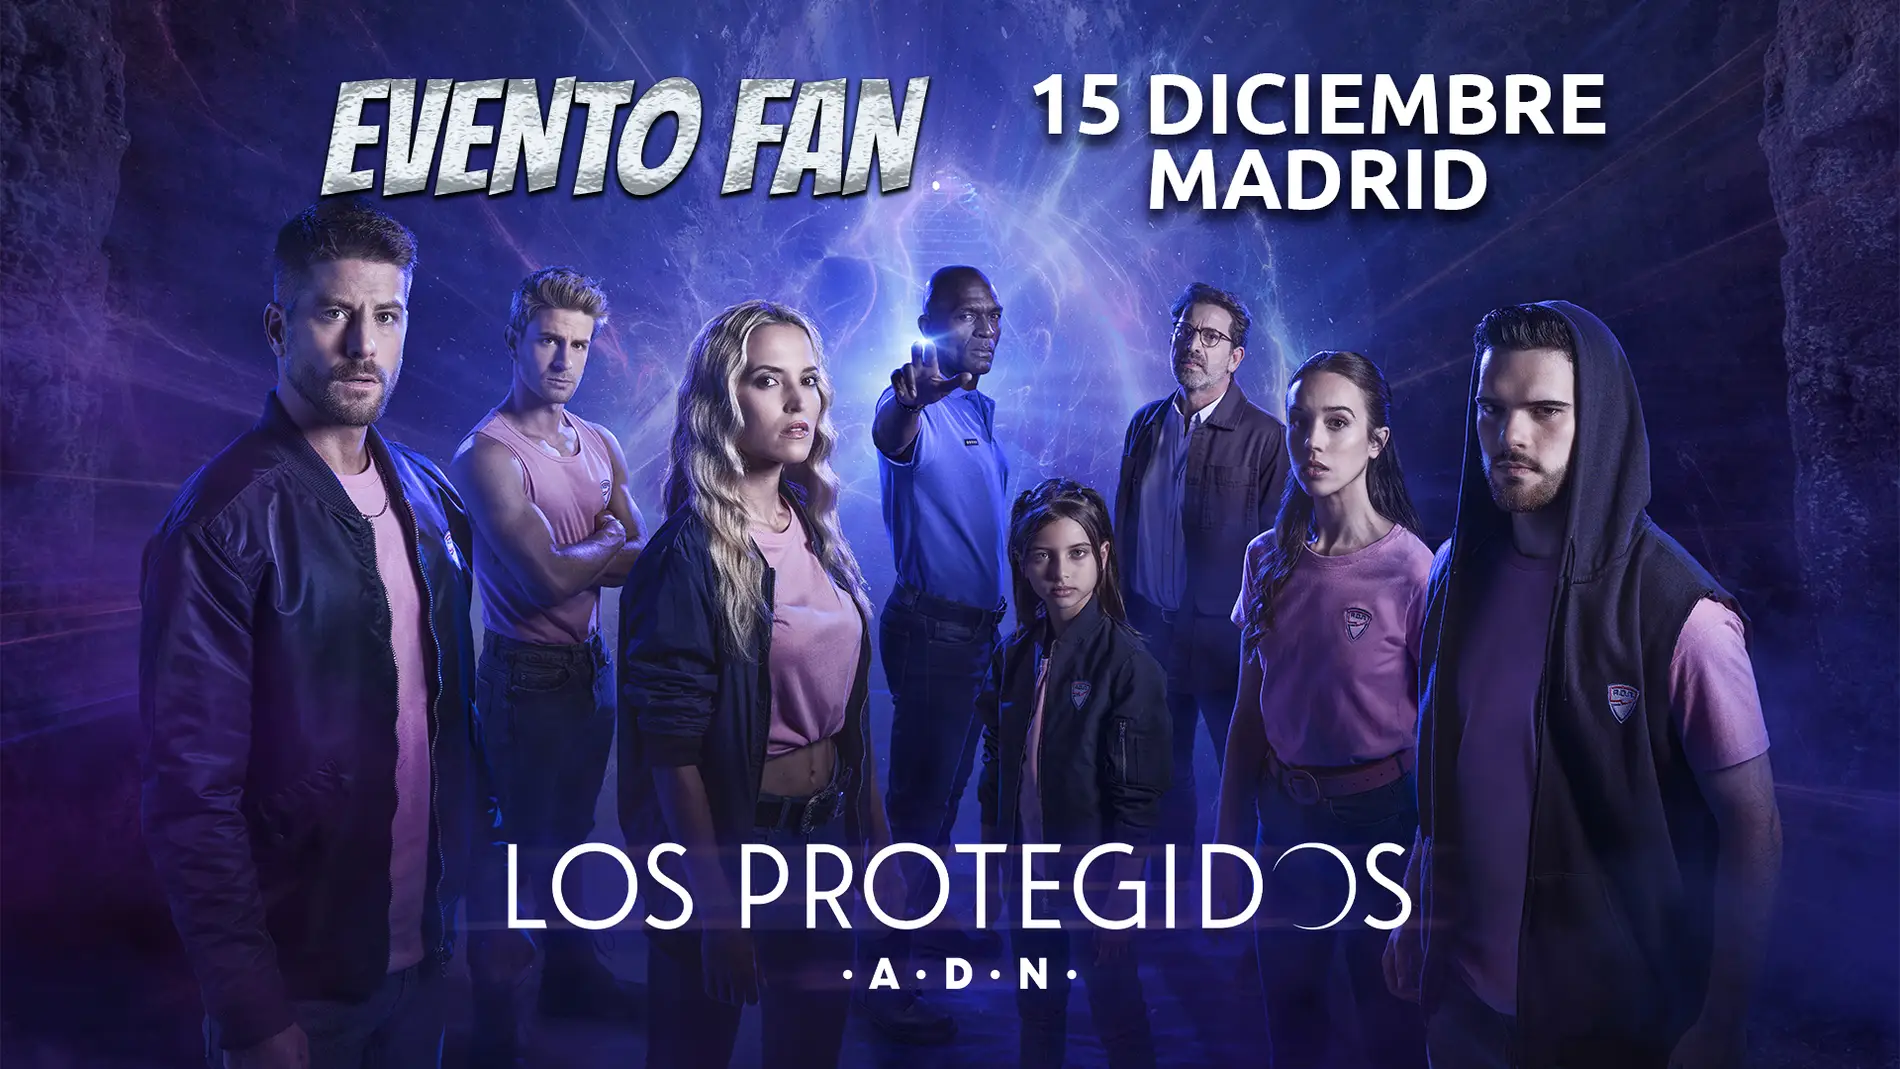 No te pierdas el evento fan de ‘Los Protegidos A.D.N.’ el 15 de diciembre en Madrid